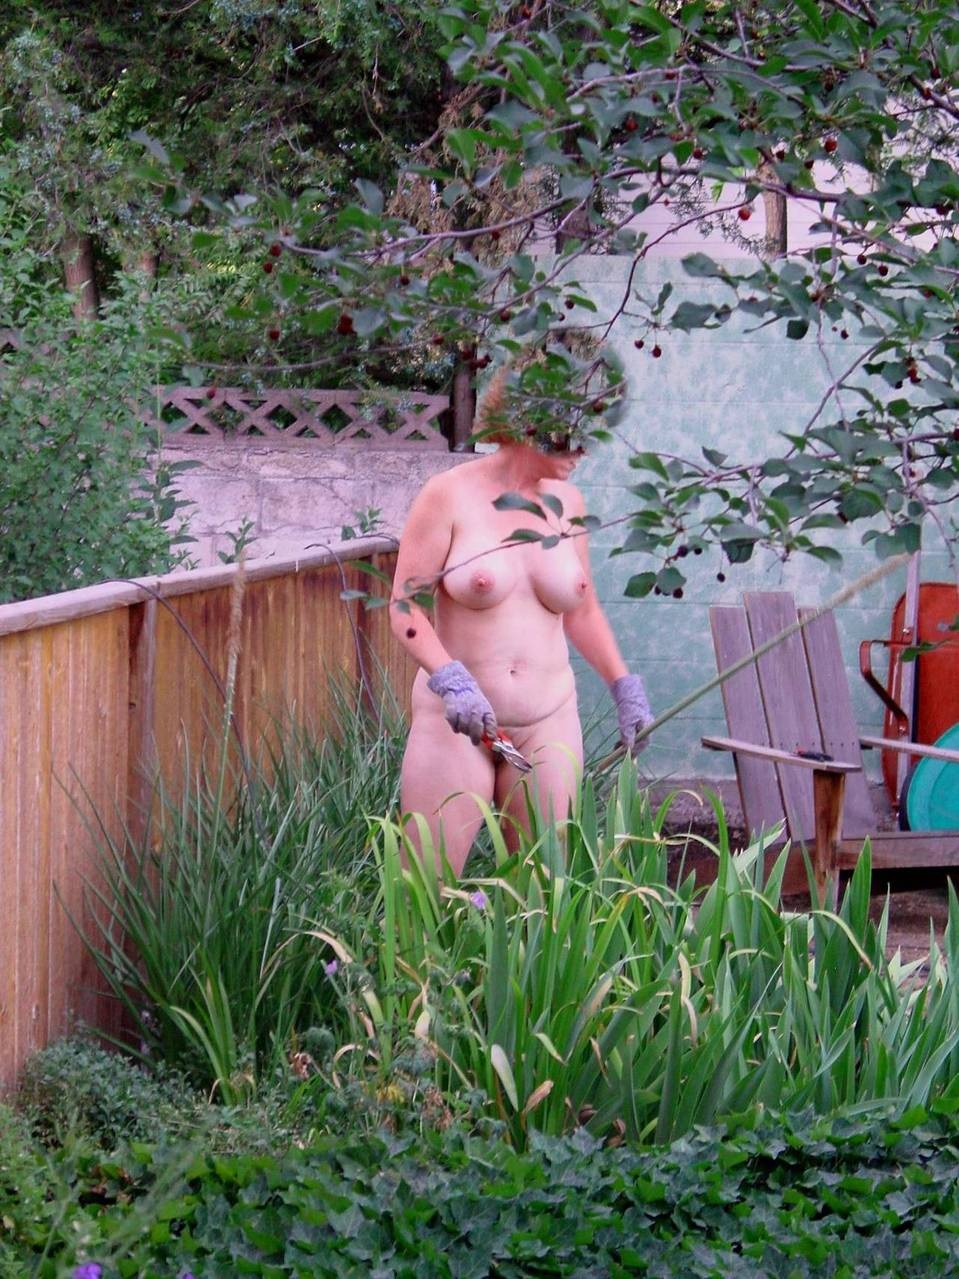 Соседи в доме напротив ходят целый день голые - Советчица